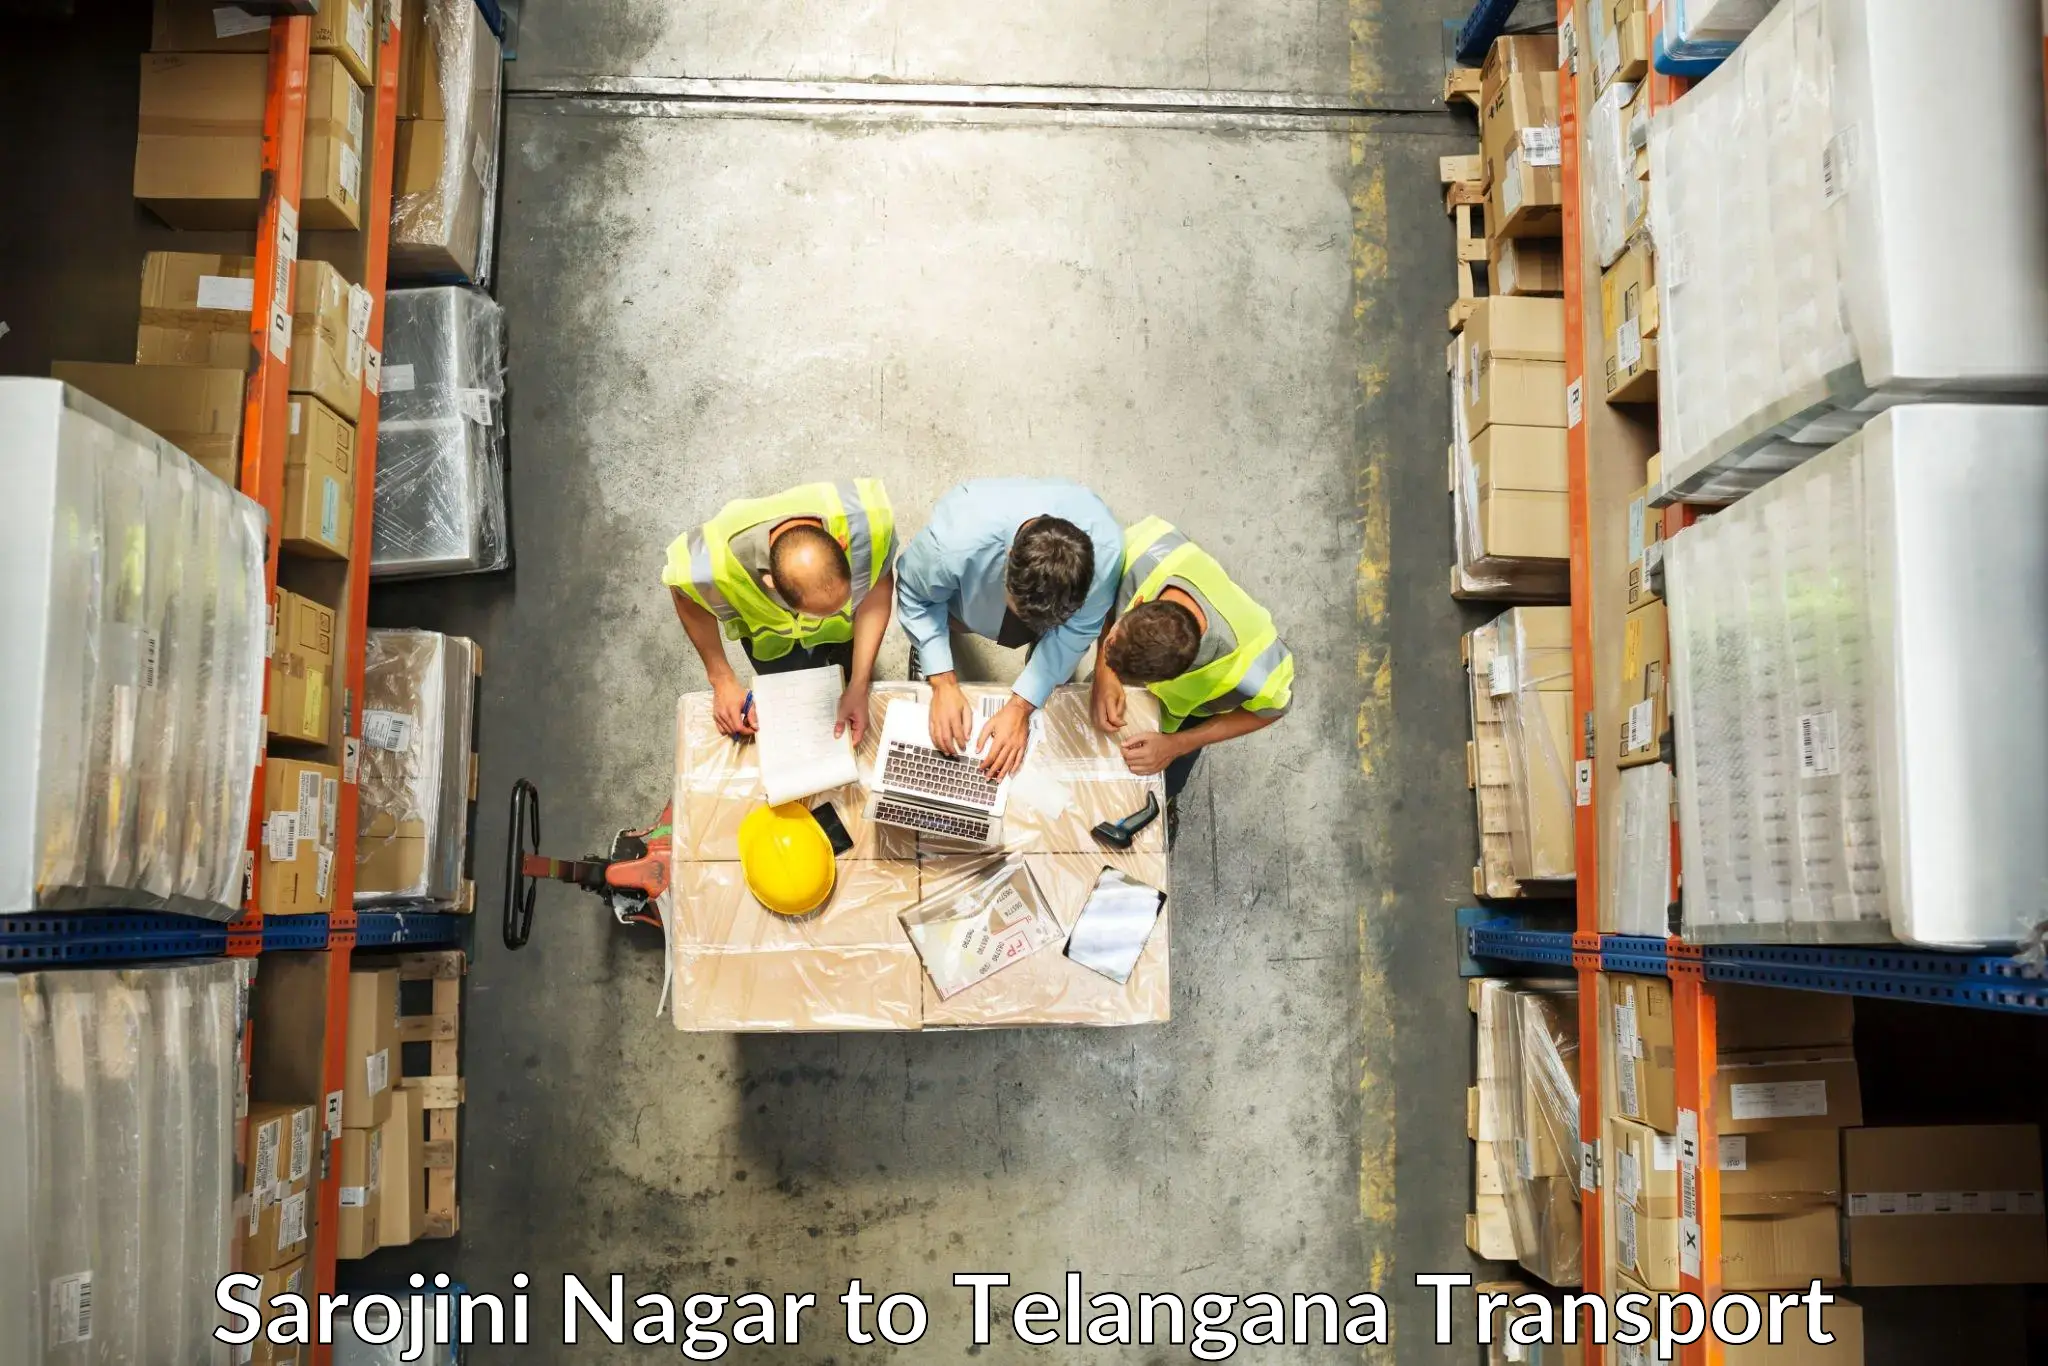 Part load transport service in India Sarojini Nagar to Kakeshwaram